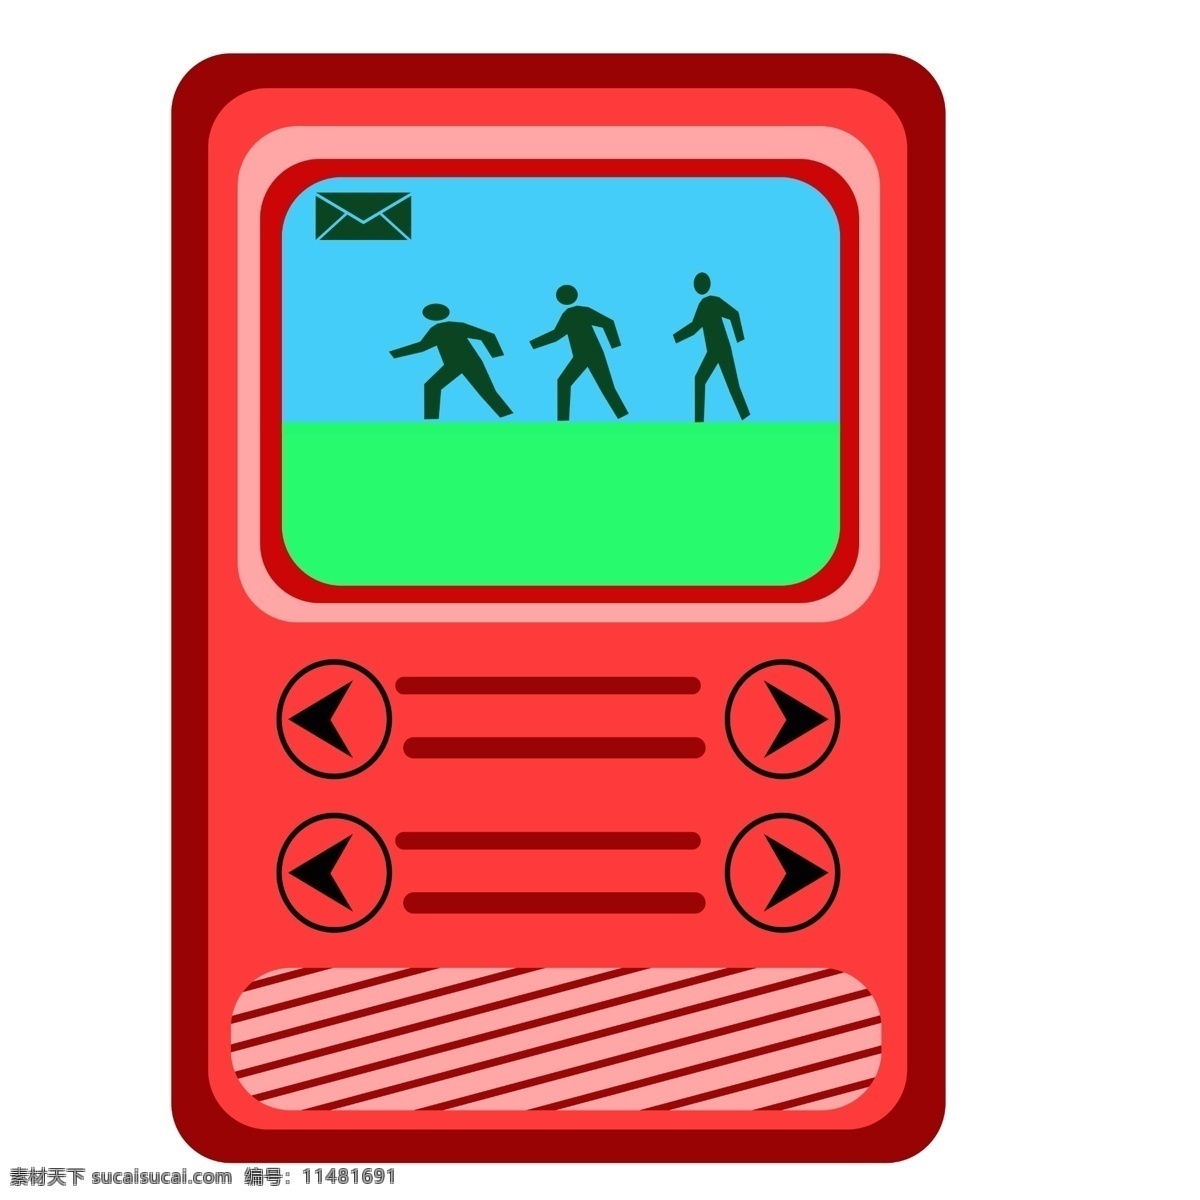 红色 游戏机 插画 红色的游戏机 卡通插画 打游戏 人物游戏机 游戏插画 玩耍 开始游戏